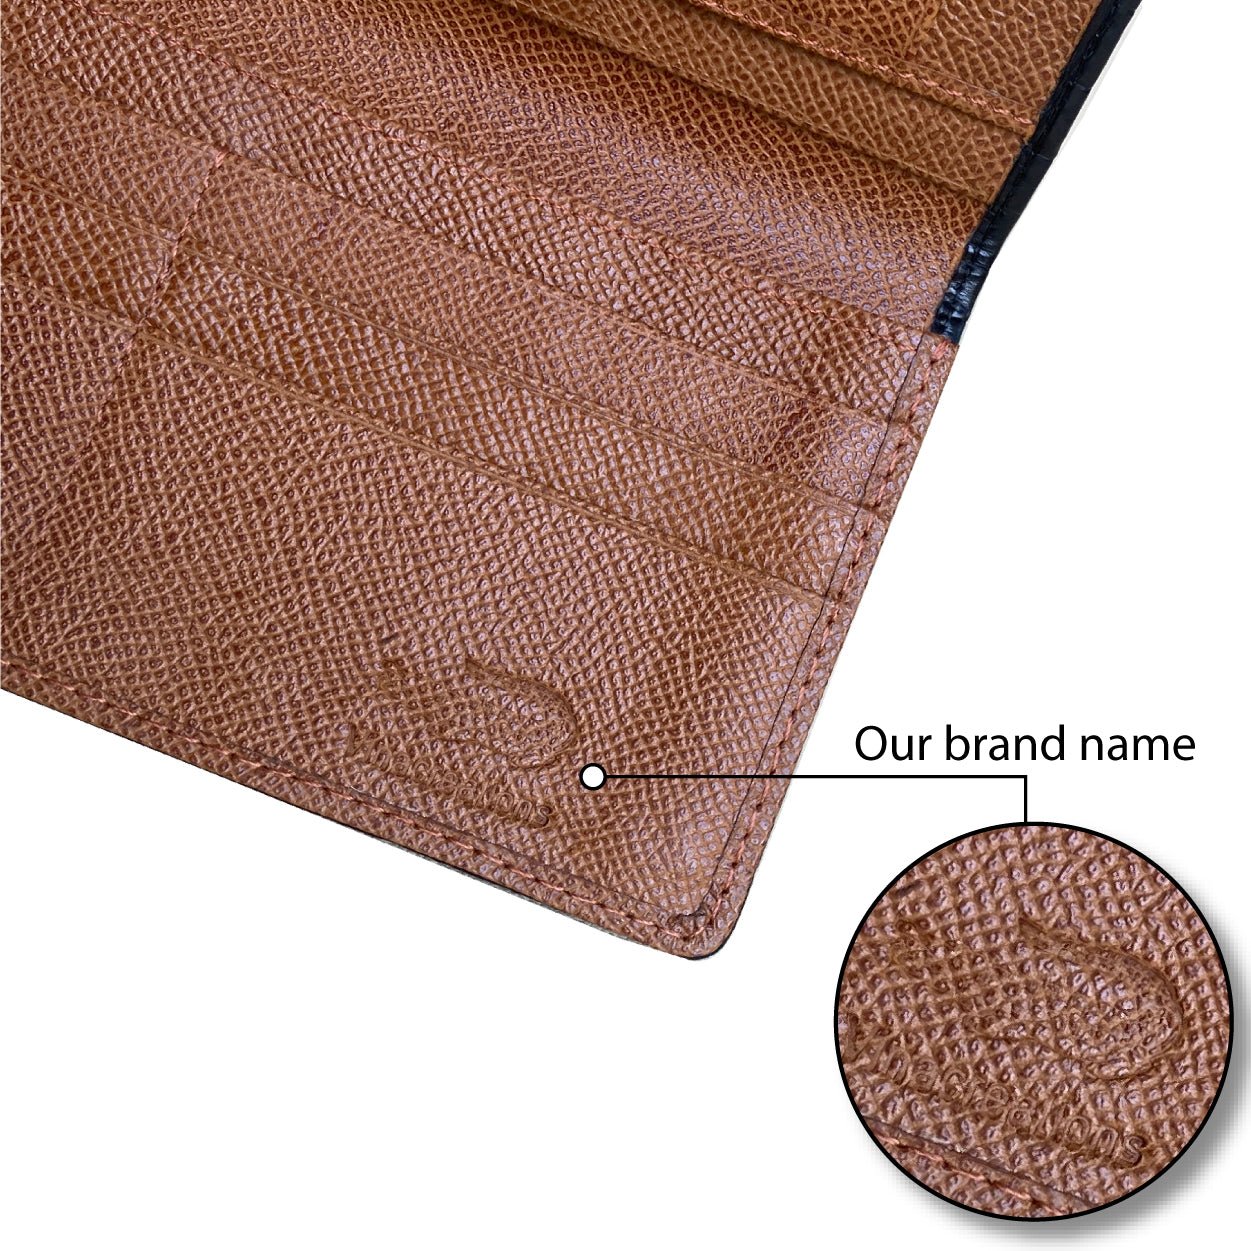 Alligator Brown Wallet  Luxury Leather Alligator Brown Wallet